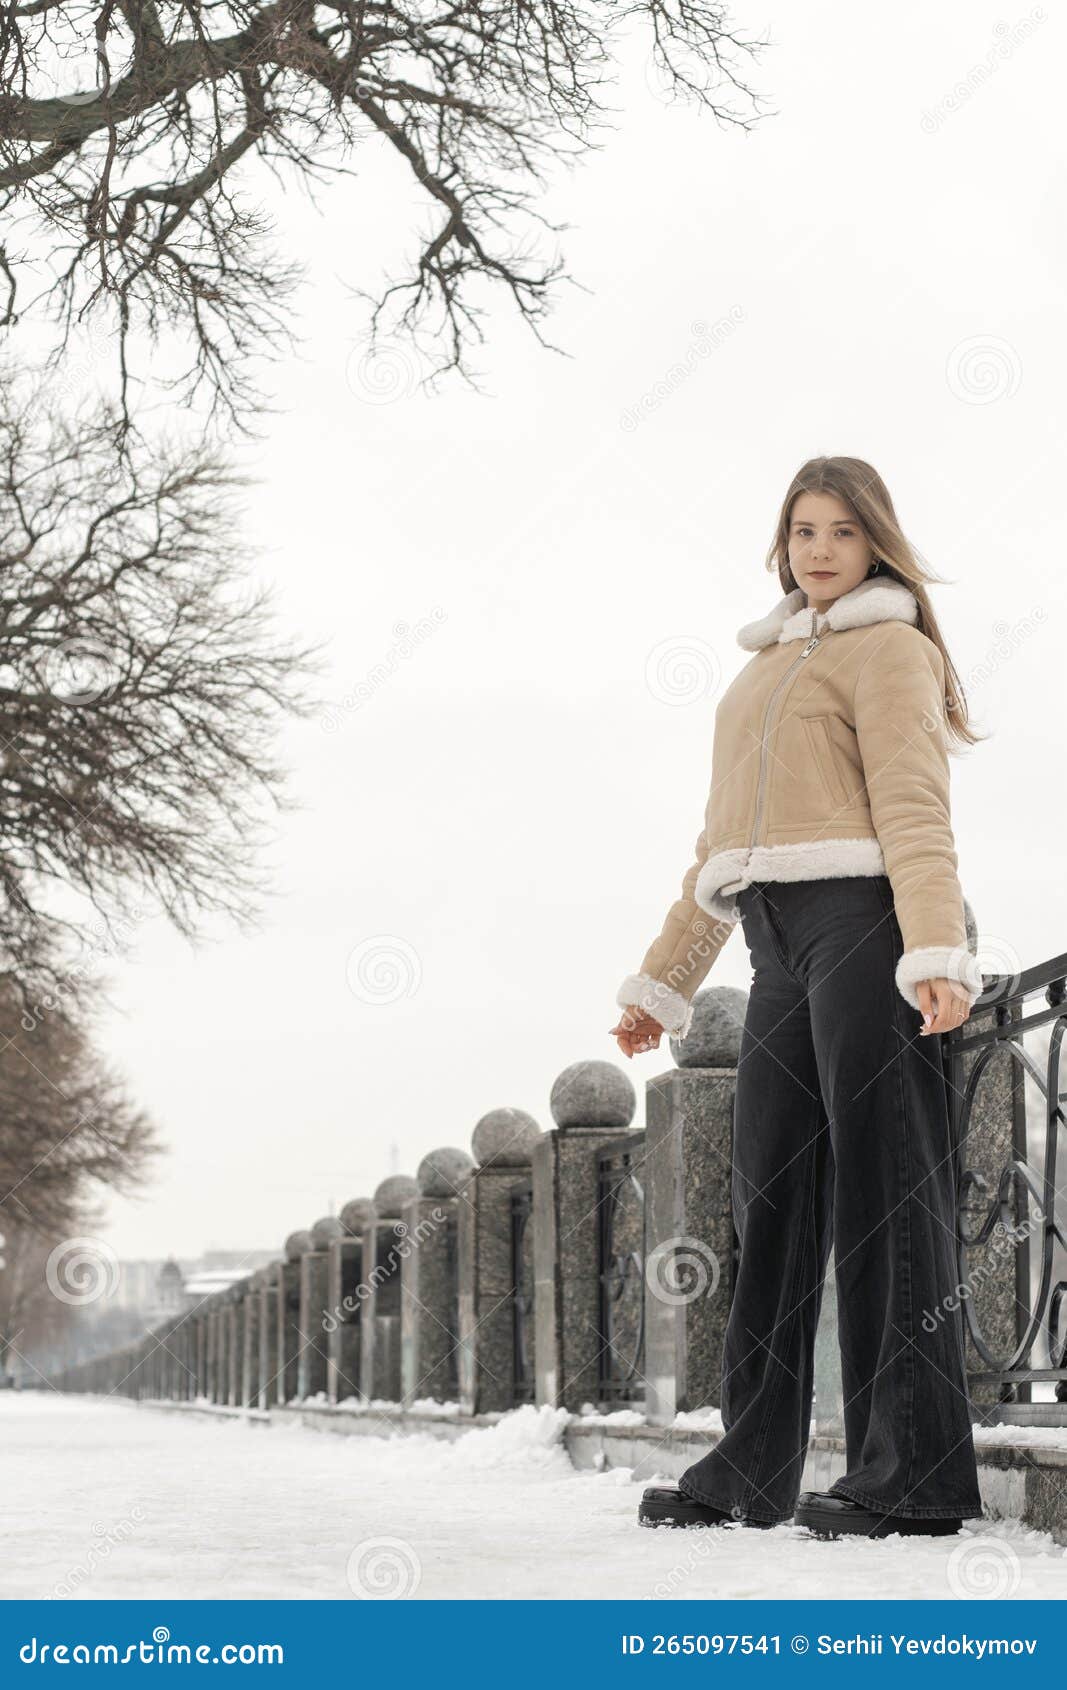 Jovem Elegante No Casaco De Pele De Ovelha Trendy Beige No Parque De Inverno.  Roupas Femininas Da Moda Para O Inverno Frio Imagem de Stock - Imagem de  modelo, pessoa: 265097541